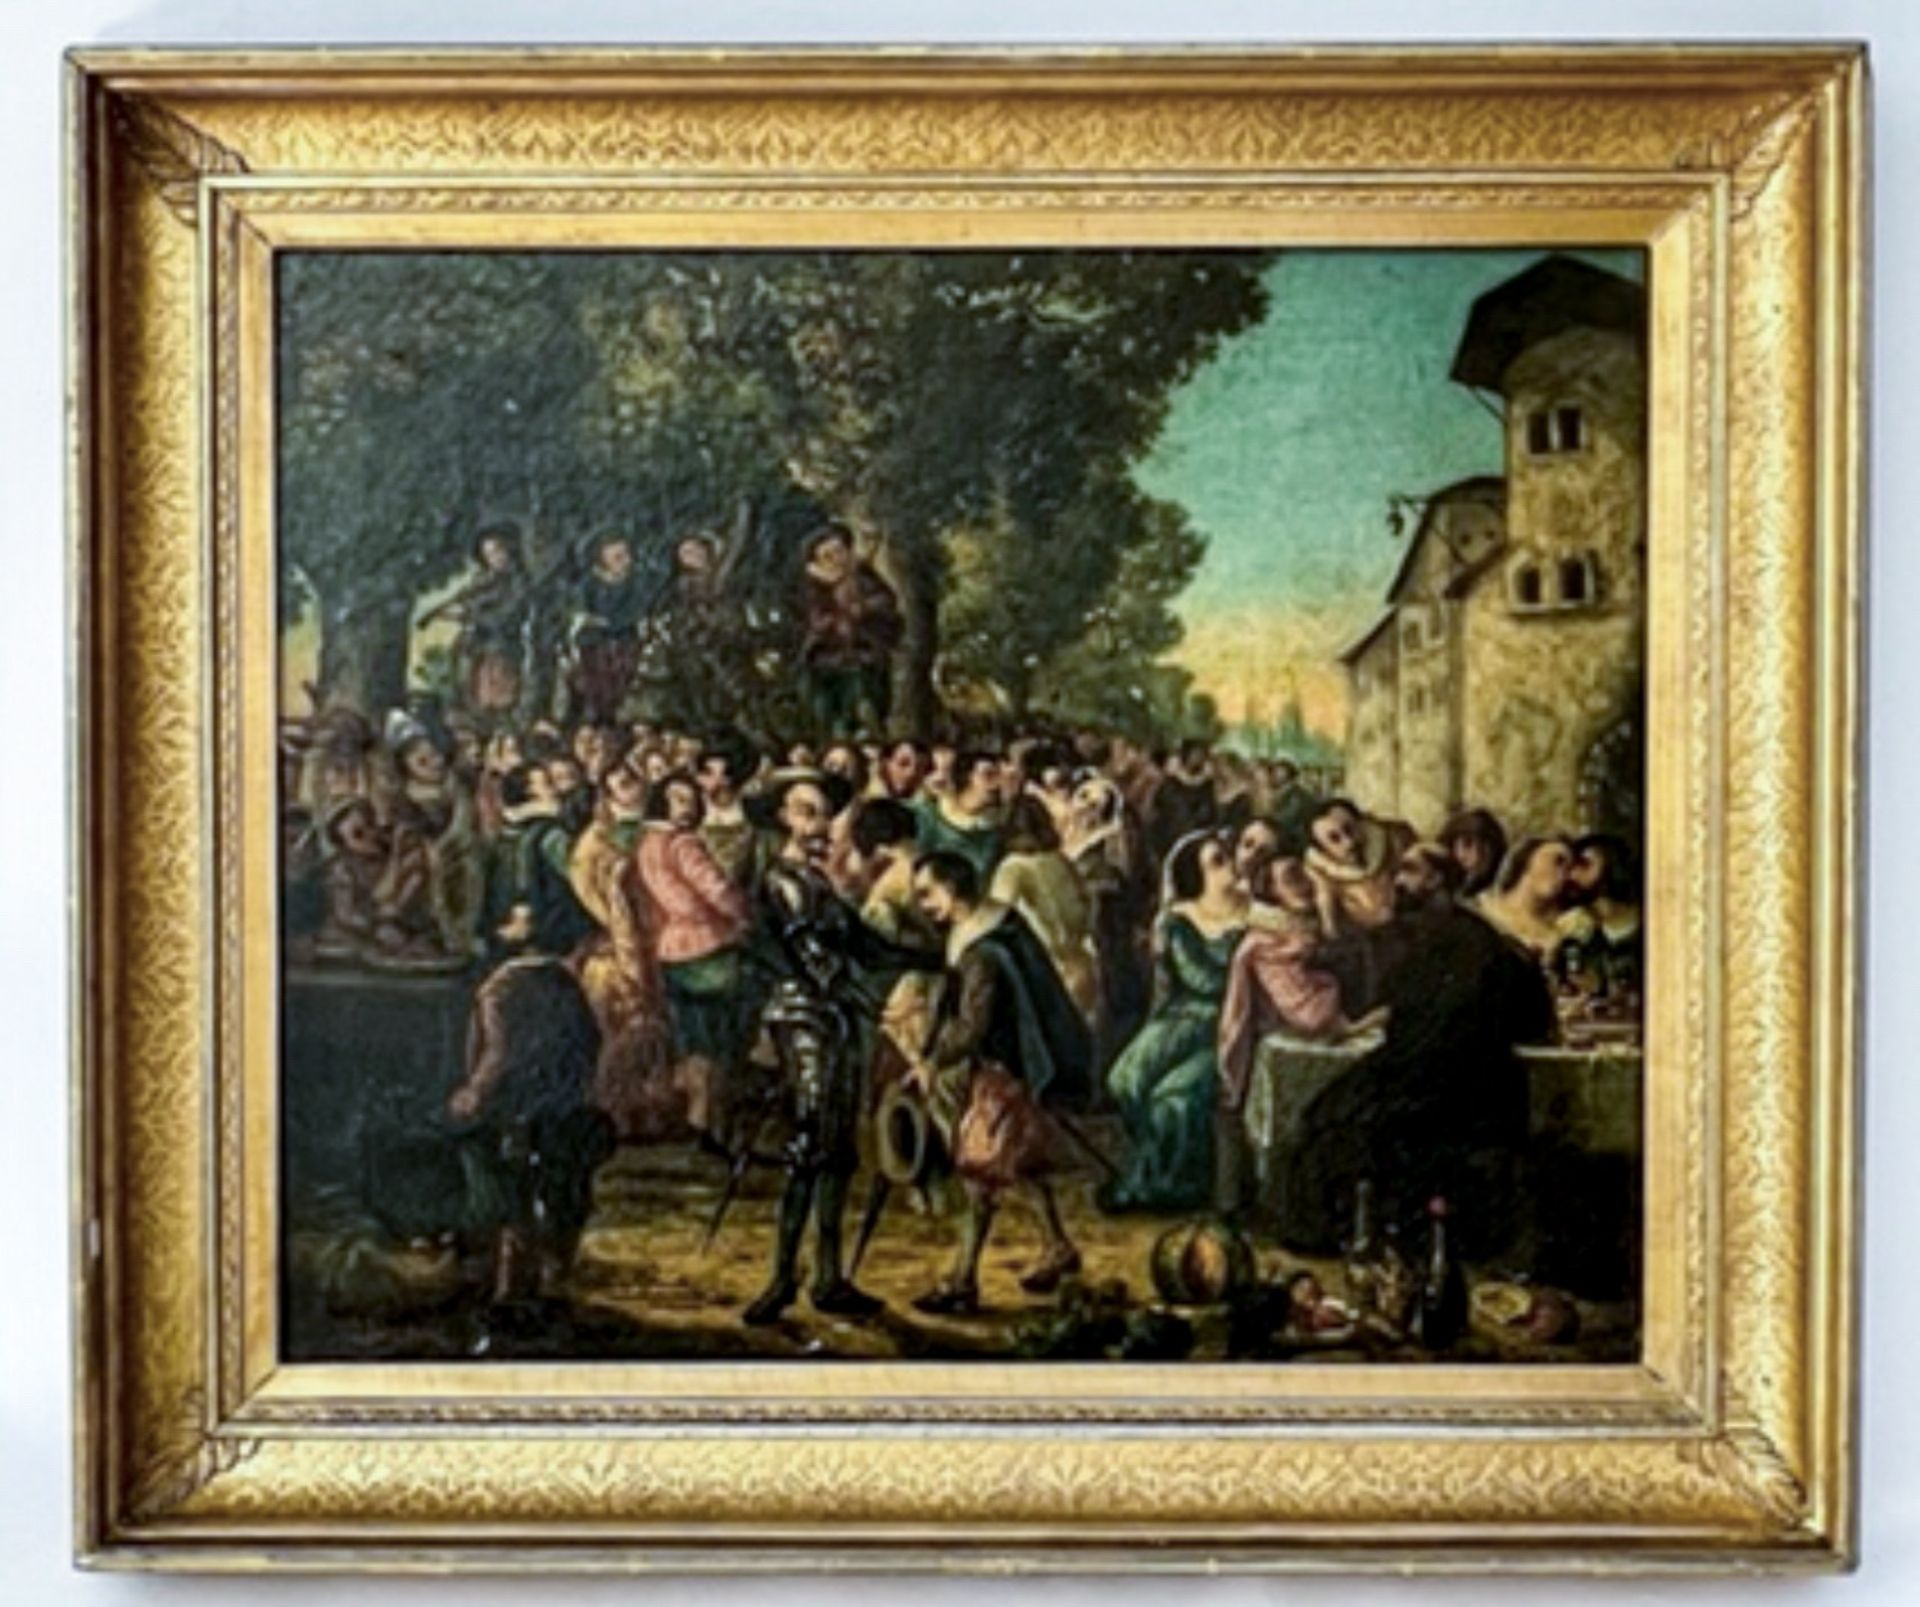 Gemälde " Adelige/Ritter beim Fest"